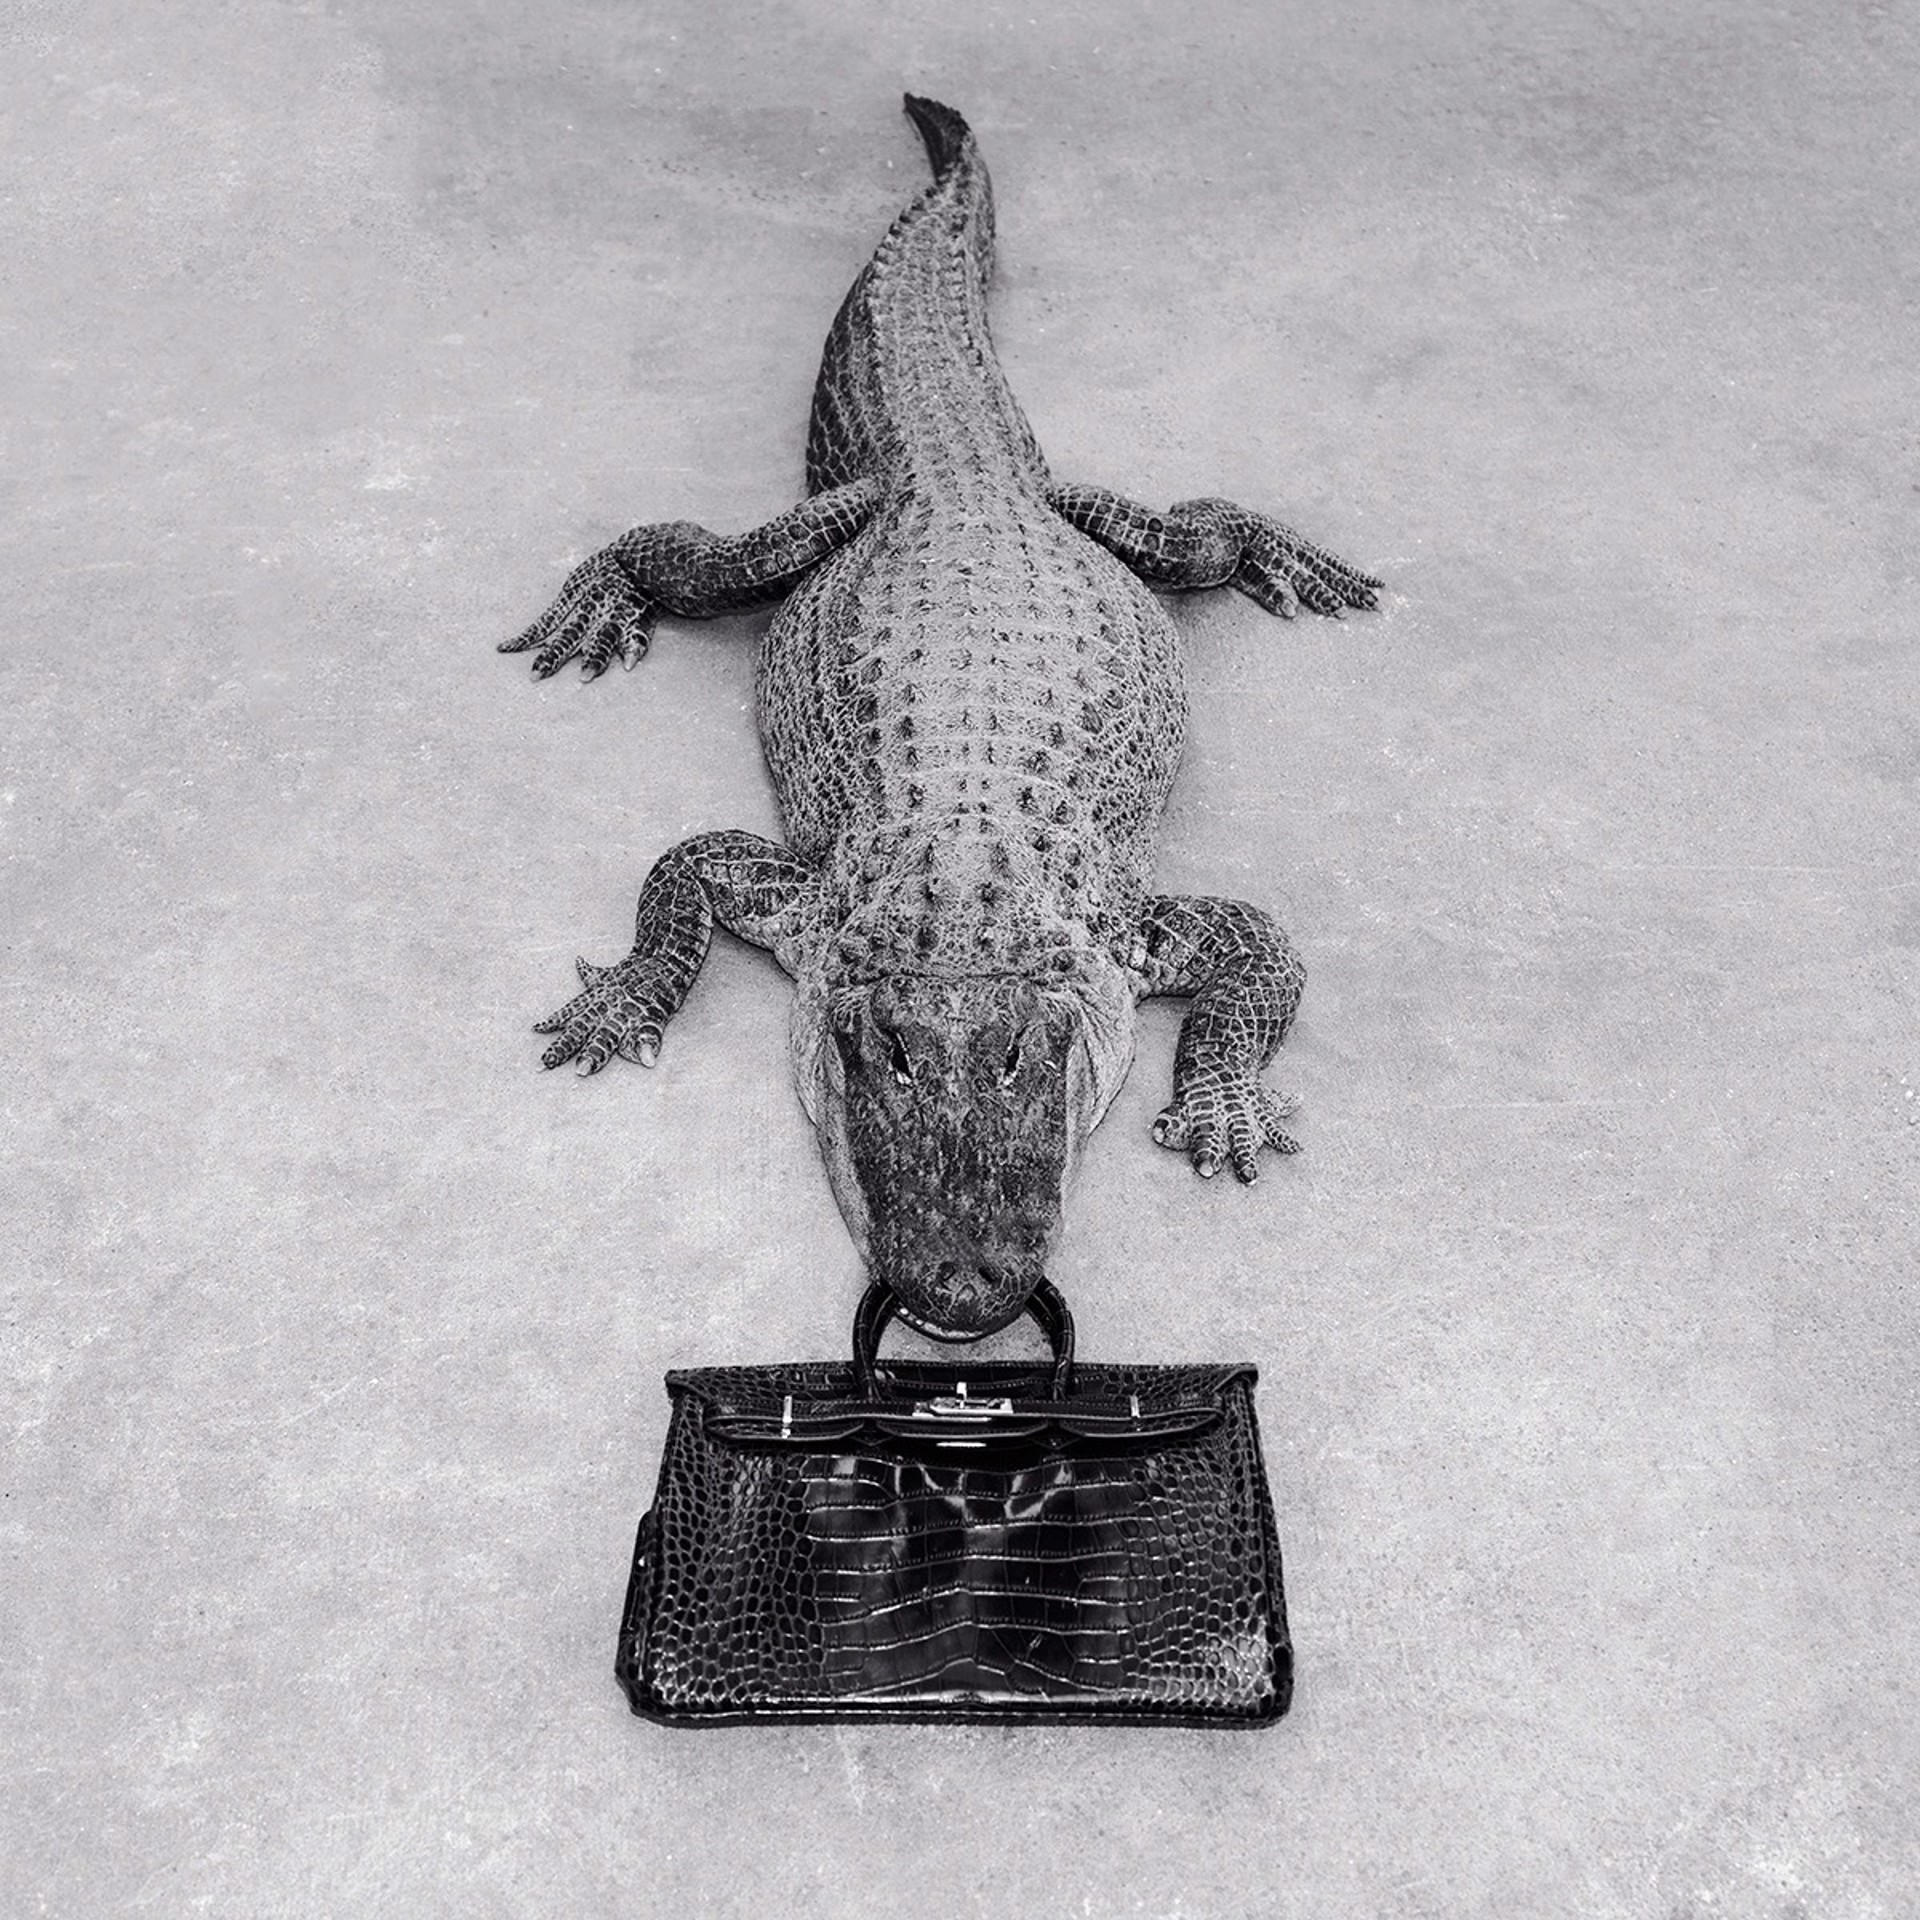 Gator Birkin Monochrome by Tyler Shields